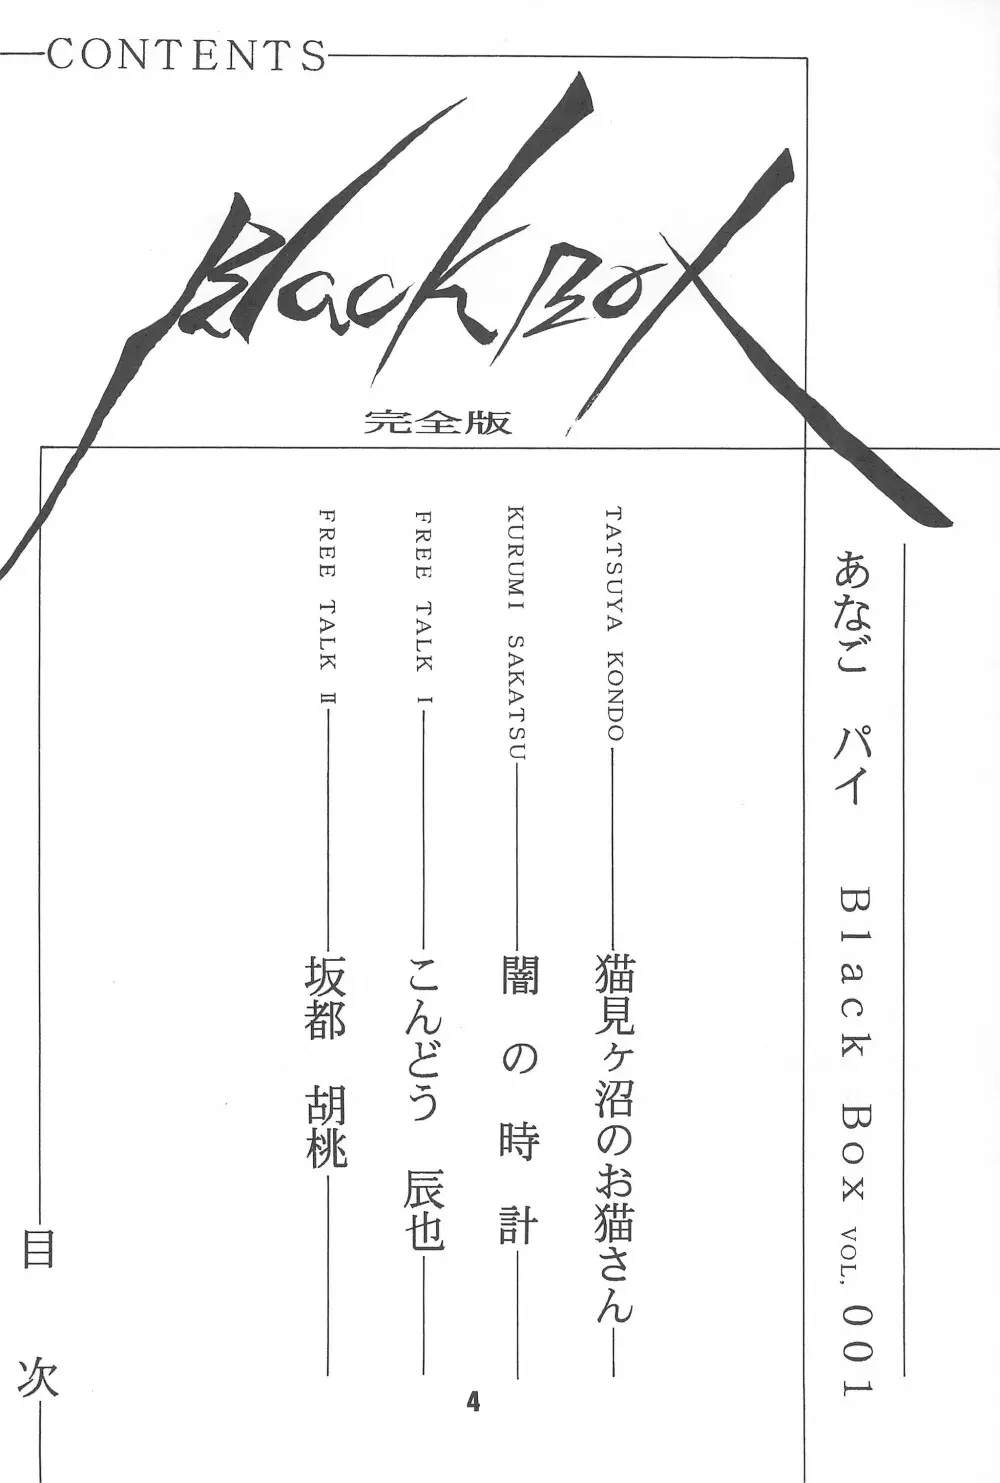 Black Box Vol.001 完全版 4ページ